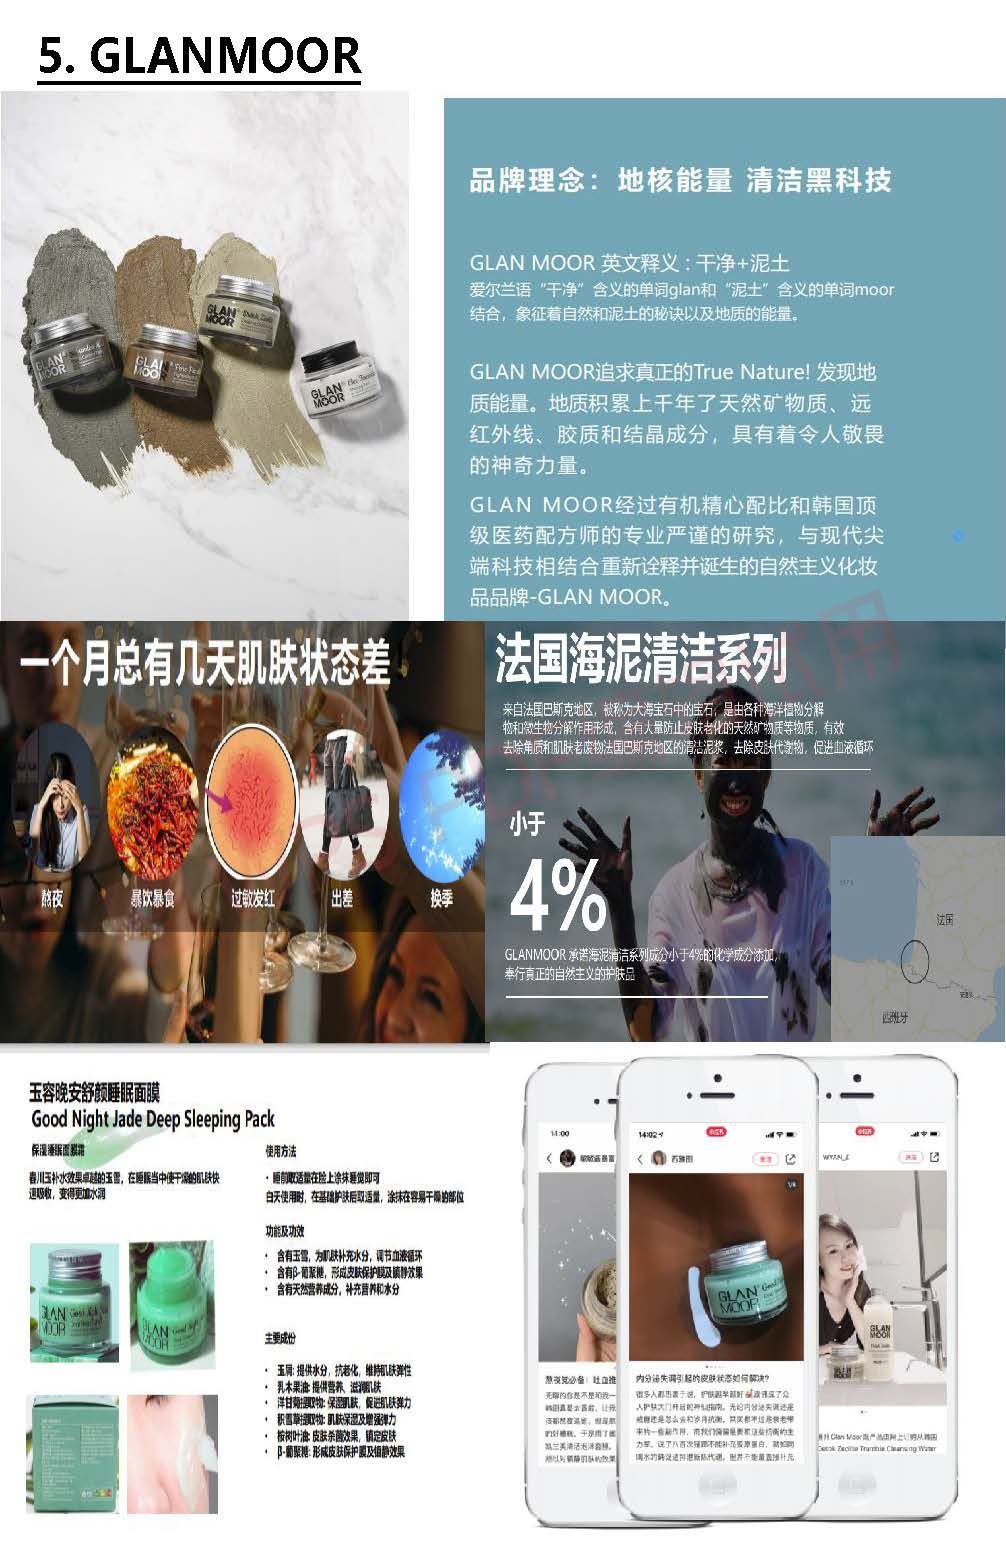 2021 중국(상해)화장품시장개척지원_8월4일 (2)_加水印_页面_07.jpg